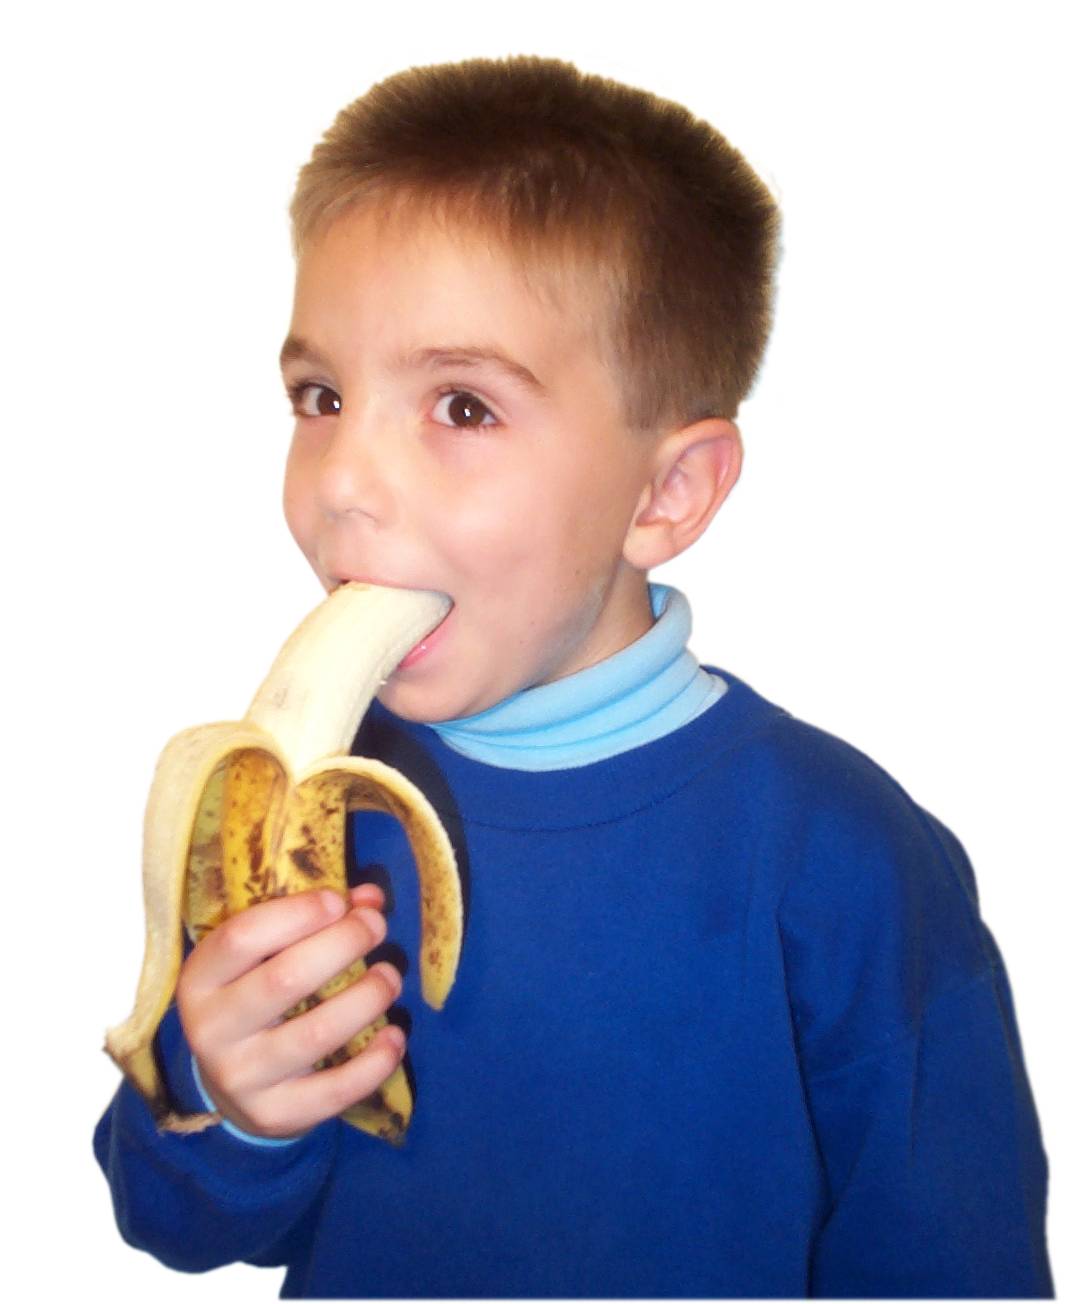 Eating banana4.jpg